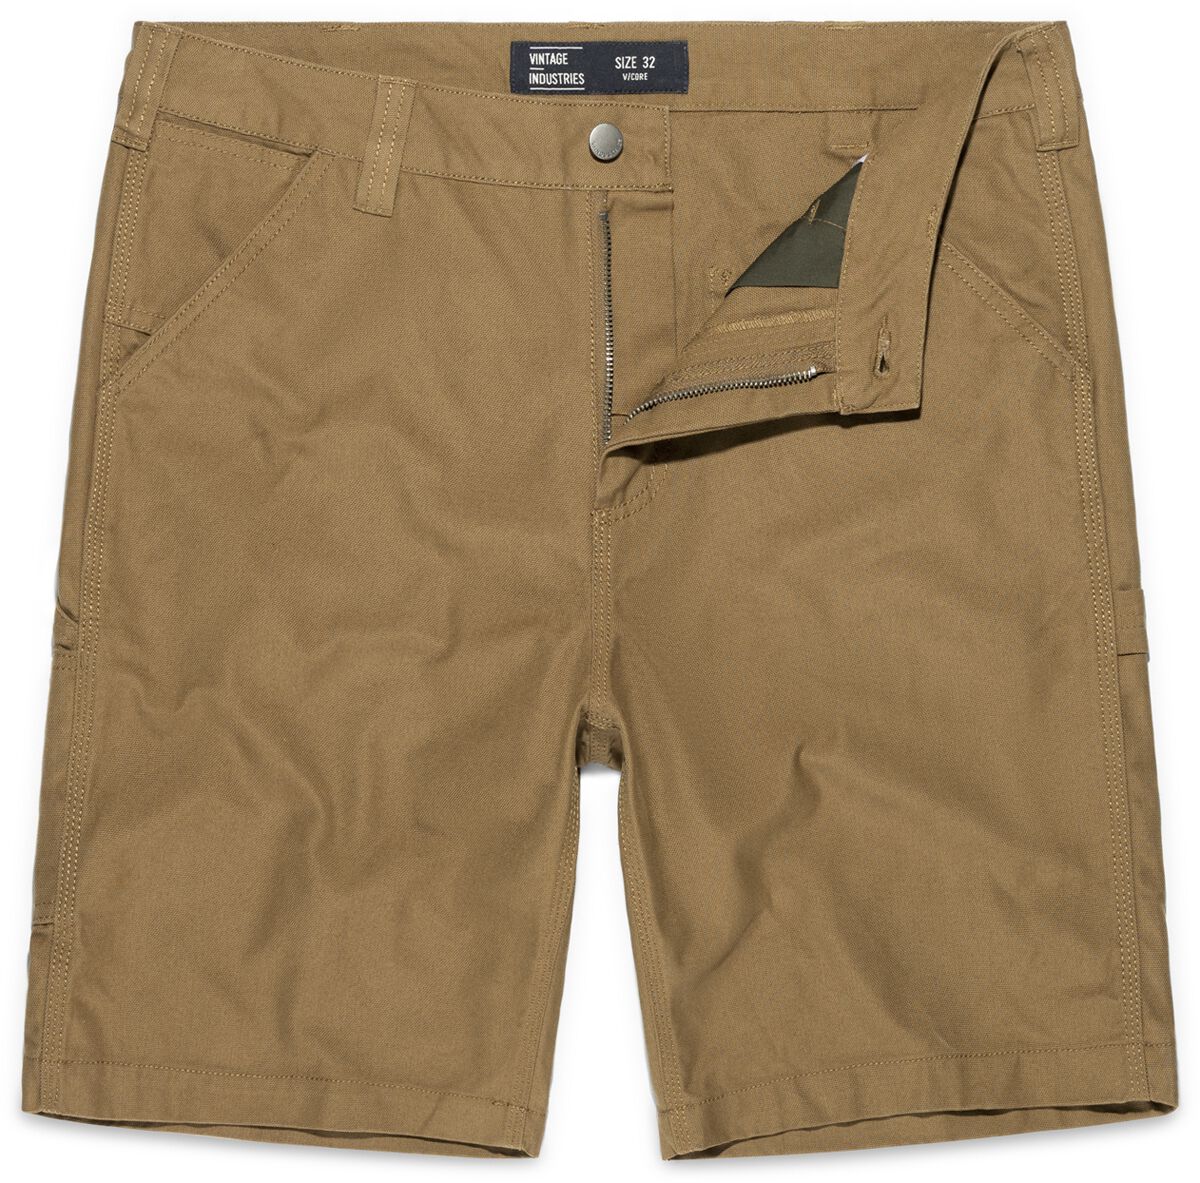 Vintage Industries Short - Dayton Shorts - 32 bis 38 - für Männer - Größe 36 - beige